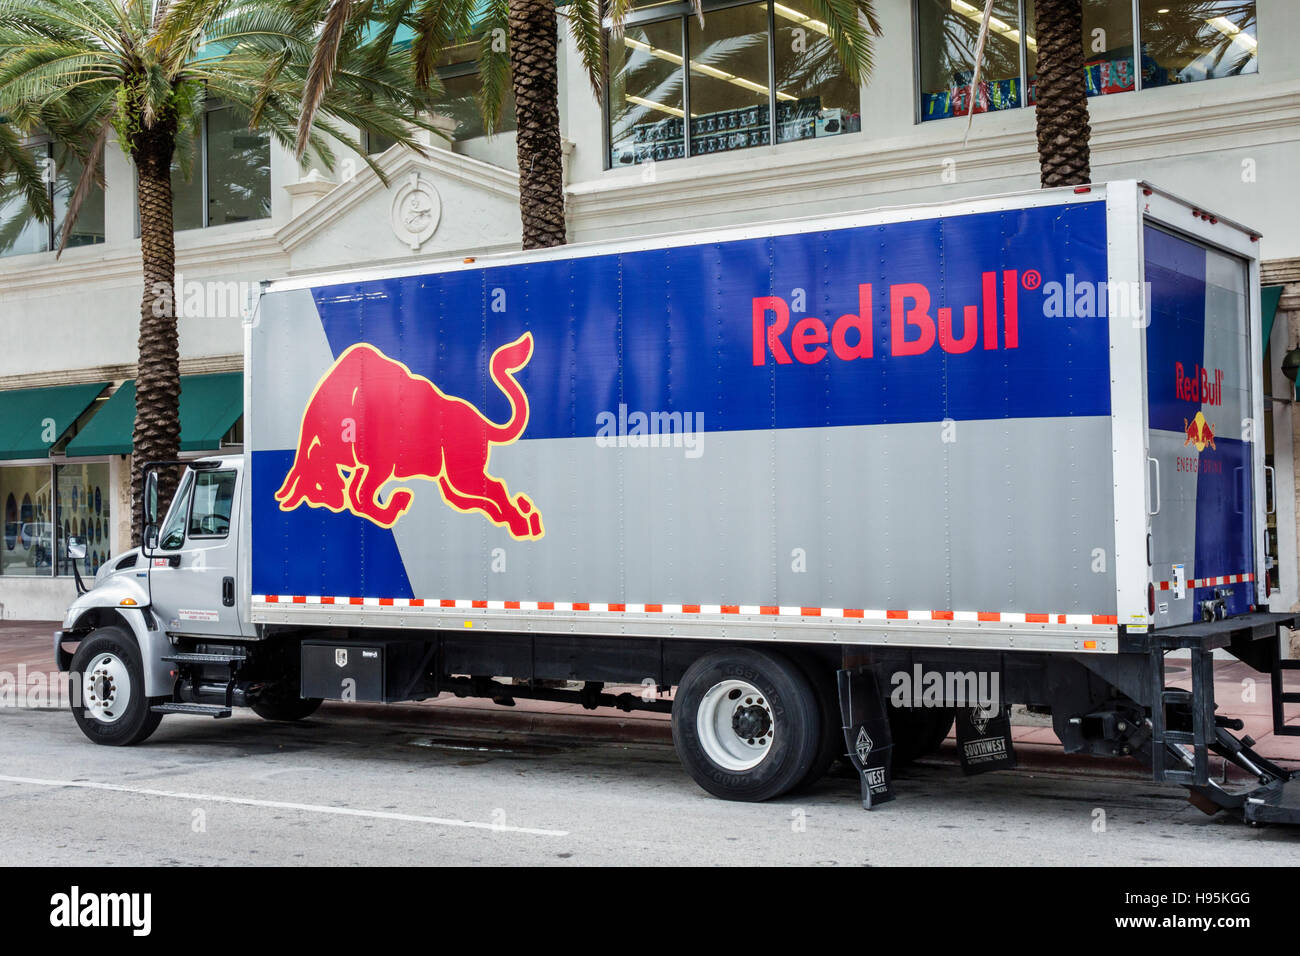 Miami Beach Florida,Red Bull,camion de livraison,van,camion,logo,les visiteurs voyage visite touristique touristique sites touristiques culture culturelle, vacances Banque D'Images